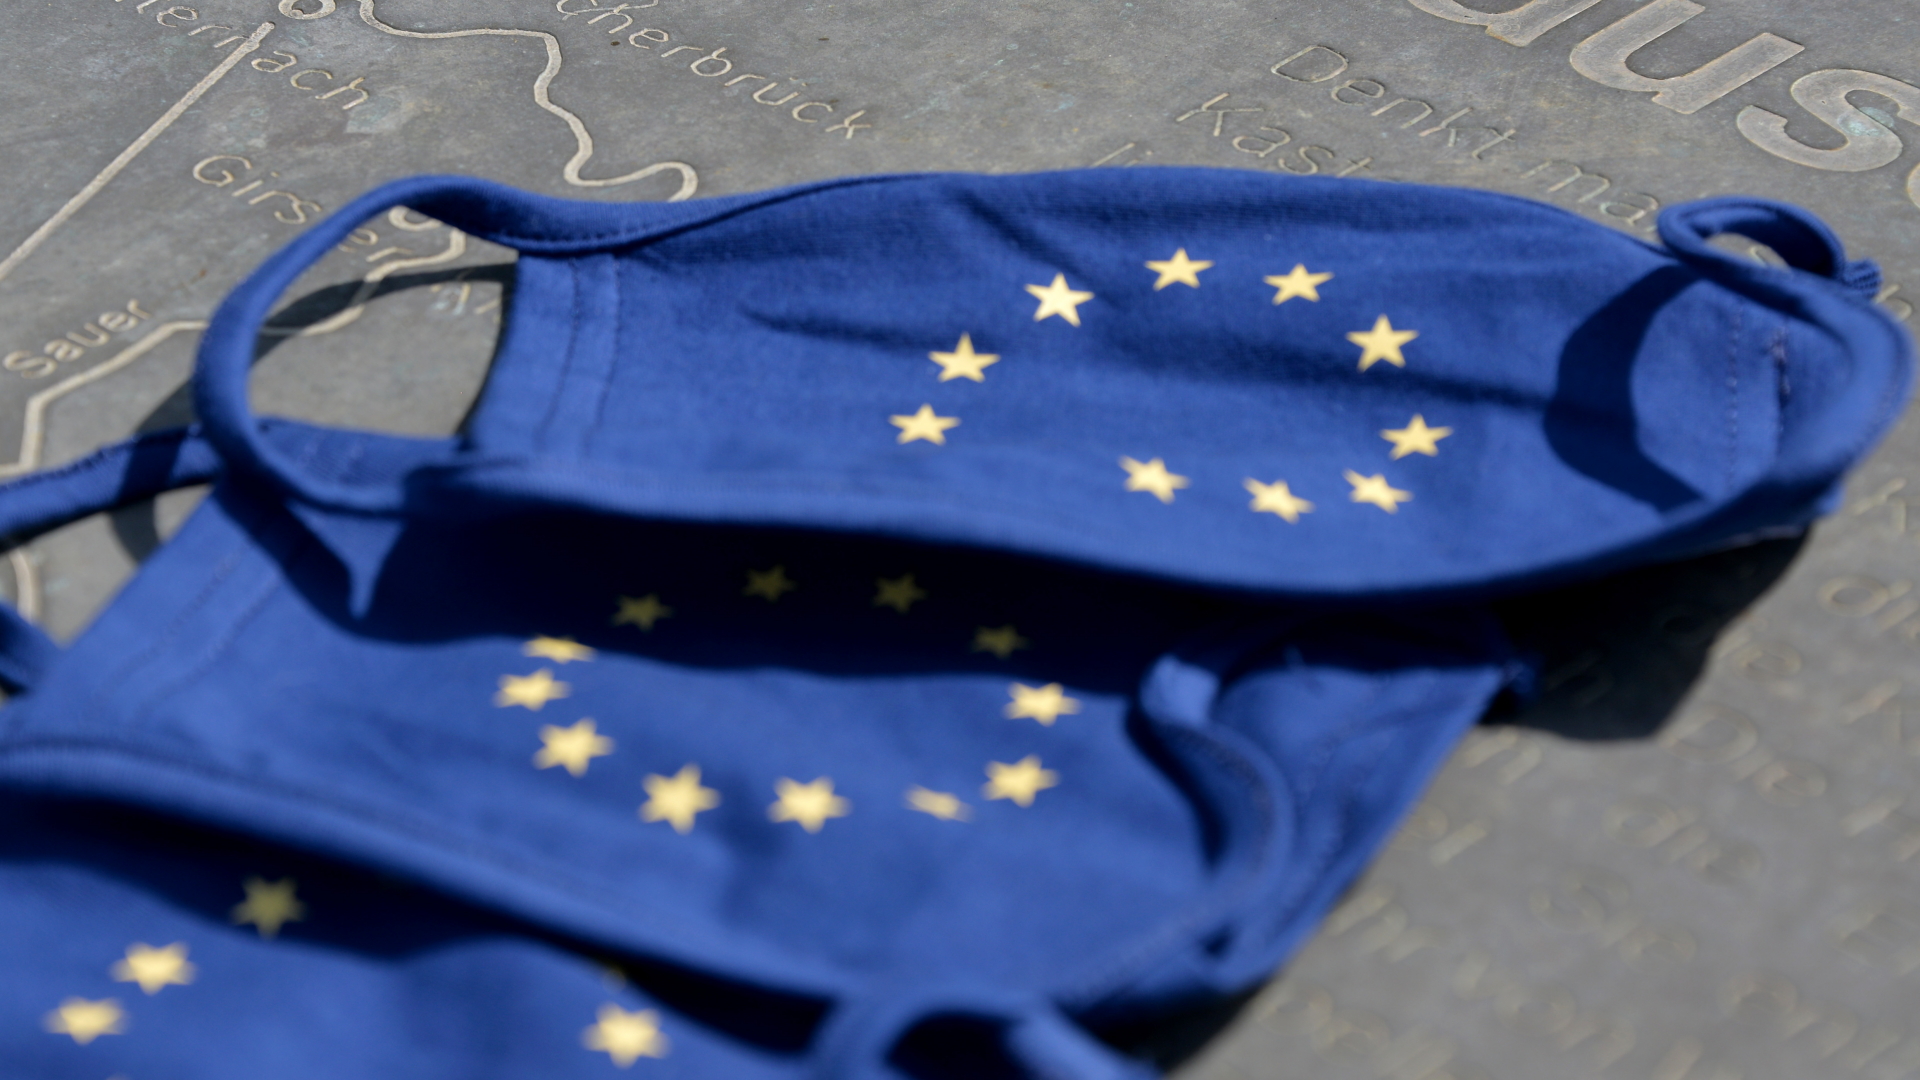 Blaue Mund- und Nasenschutzmasken mit dem Symbol der Europäischen Union, den Sternen im Kreis